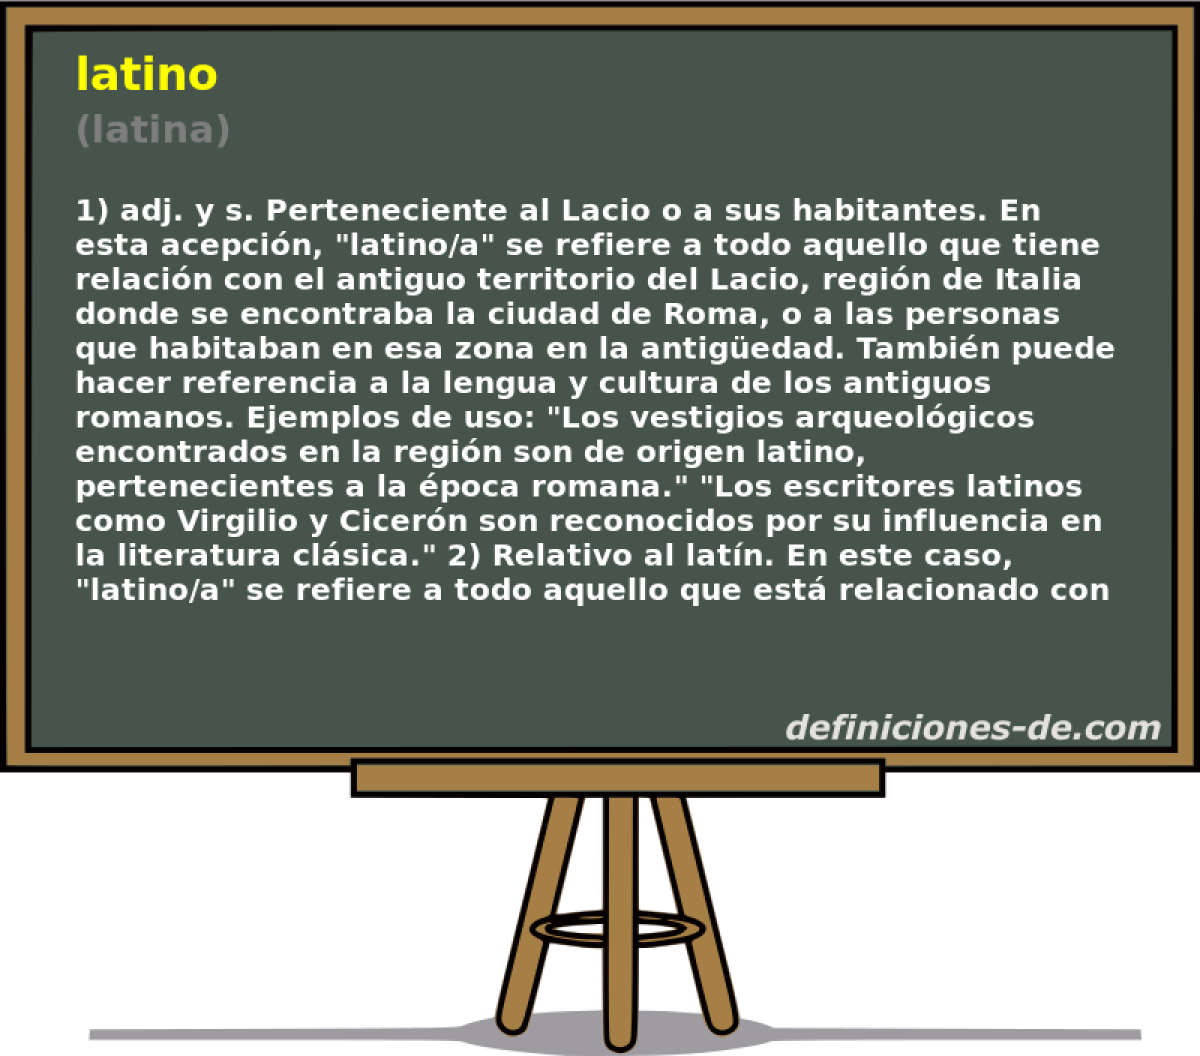 latino (latina)